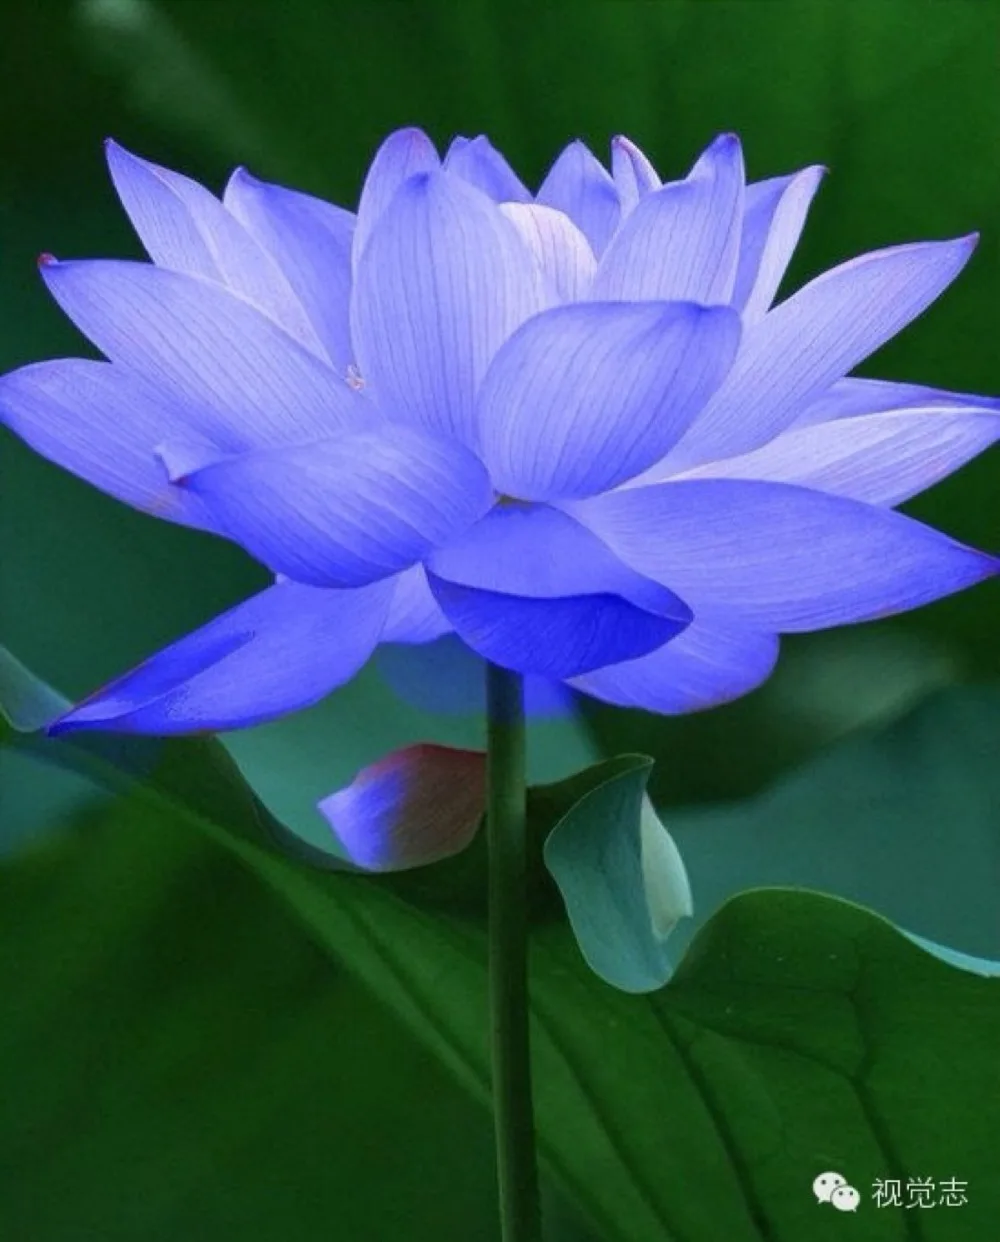 10 Mini Blue Lotus Seeds Water Lily Pad Nymphaea Nelumbo Nucifera 60kind choose